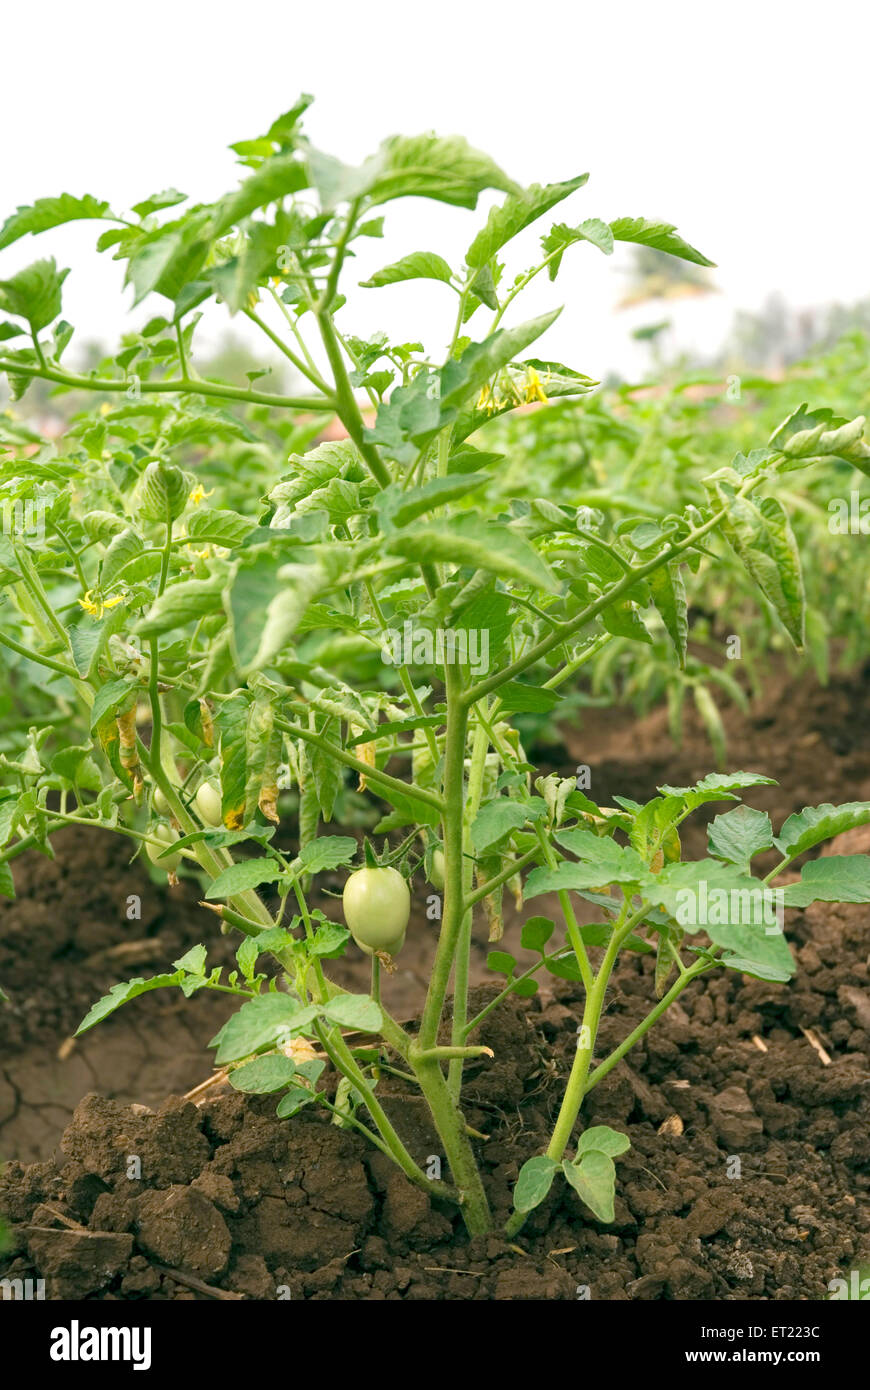 Vegetable plant de tomate Lycopersicon esculentum dans domaine Khidrapur Mumbai Maharashtra Inde Banque D'Images